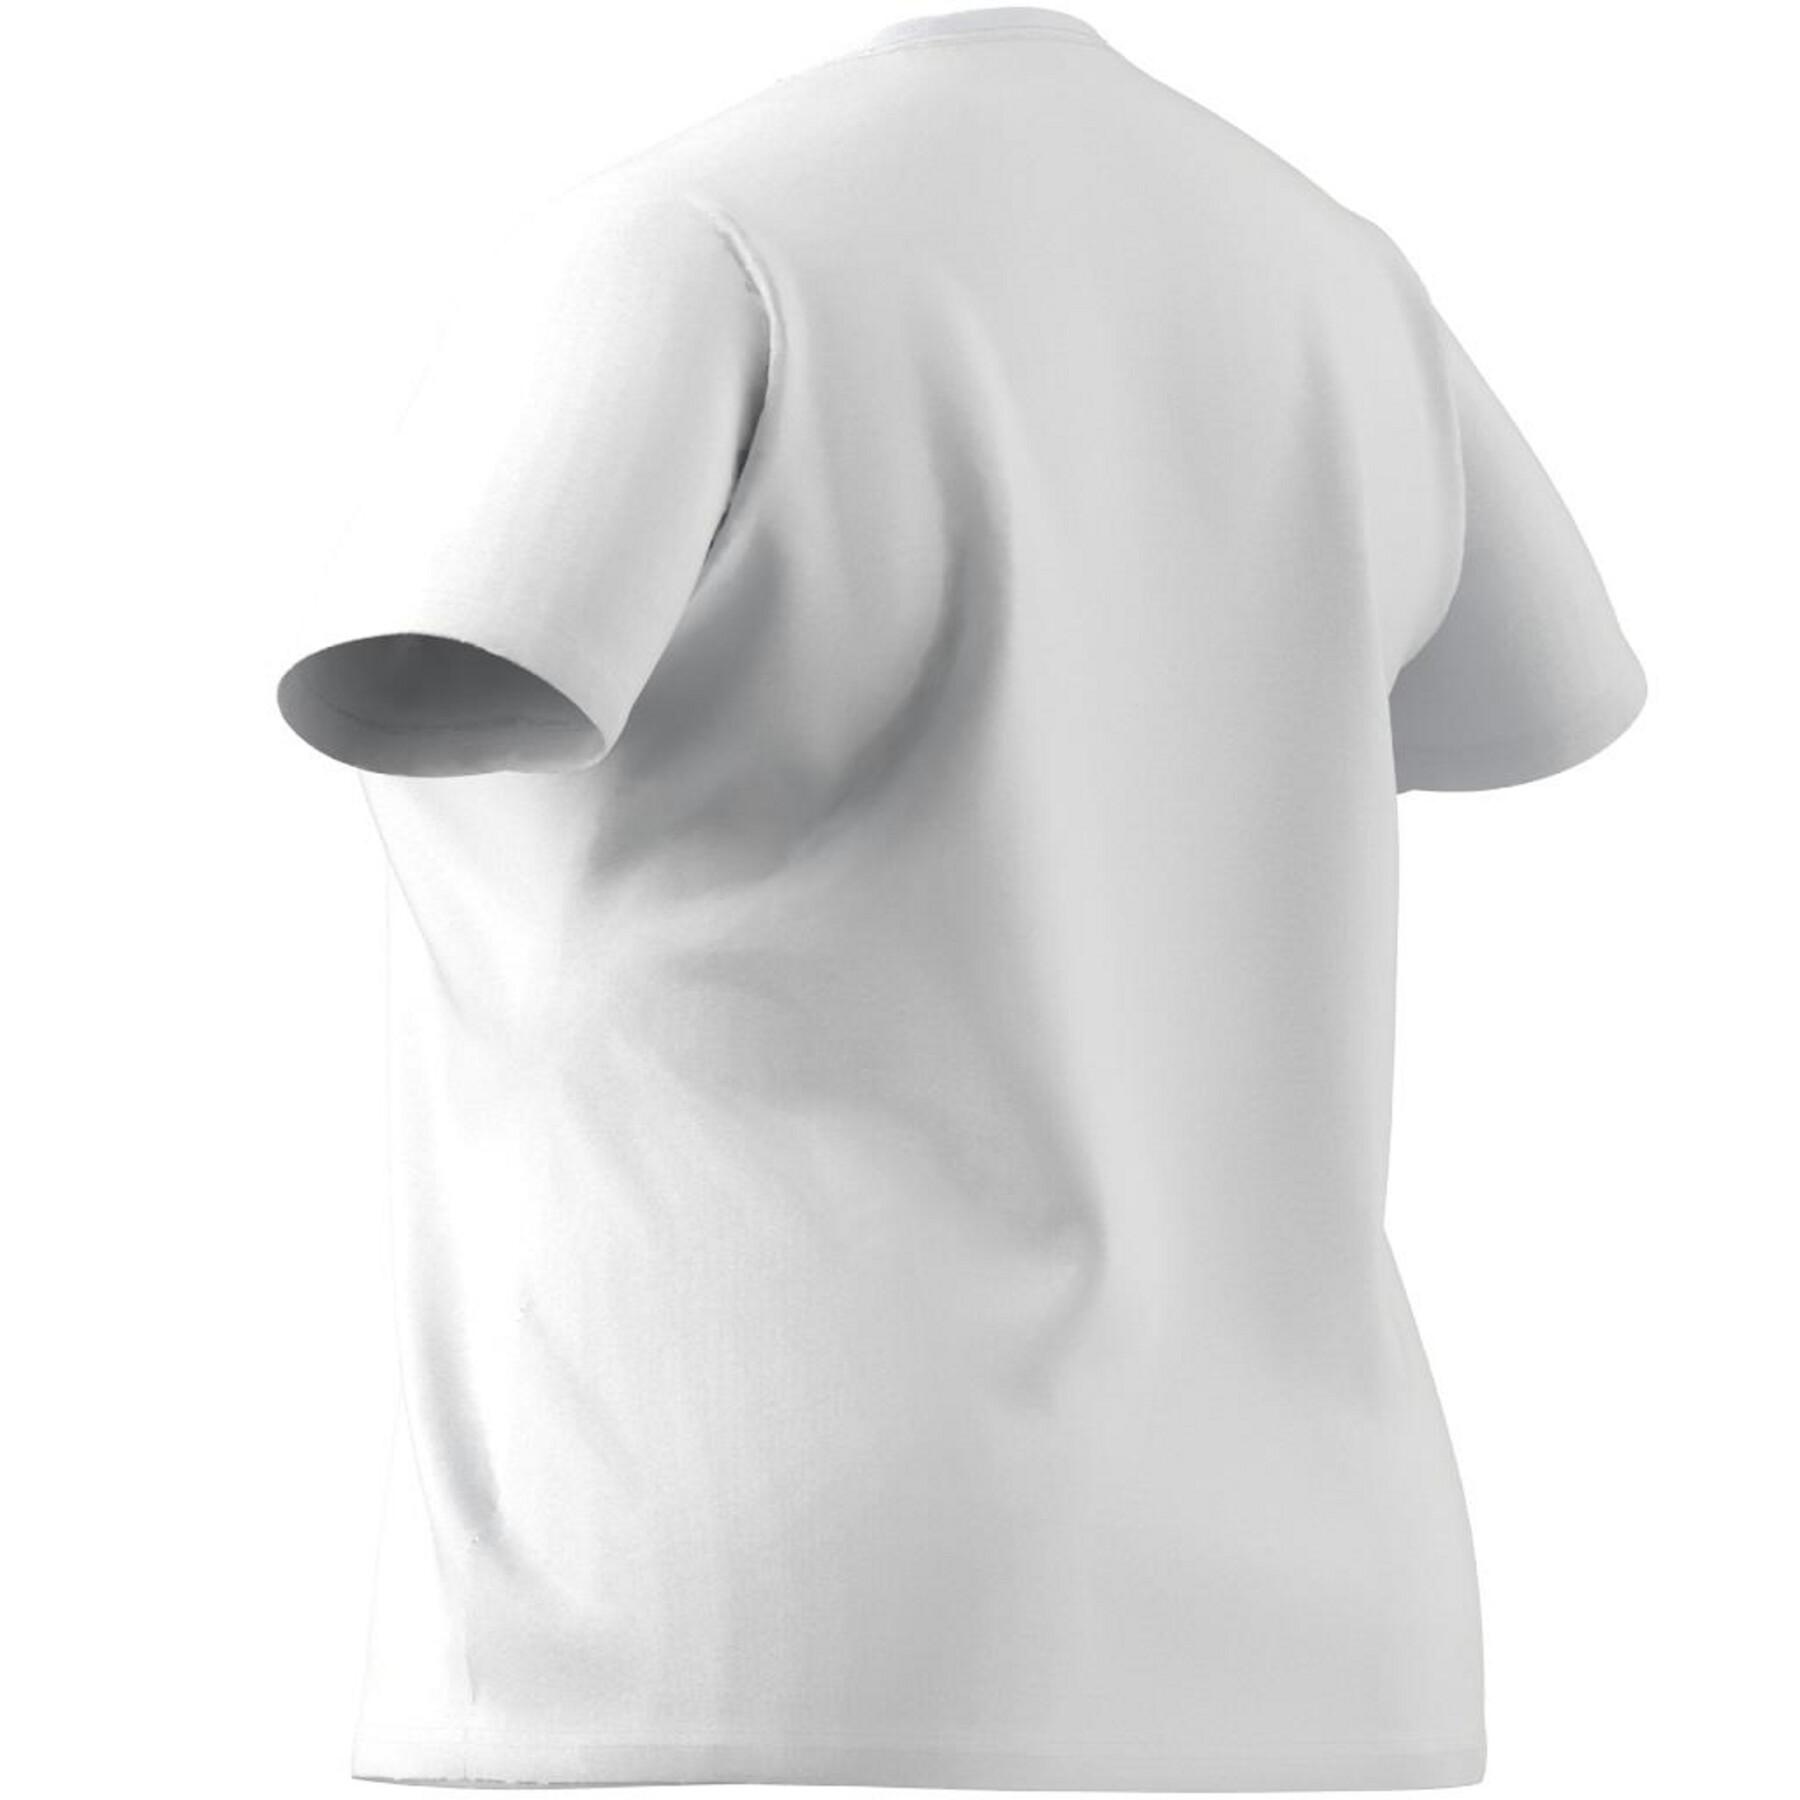 T-shirt i stor storlek för kvinnor adidas Essentials Logo